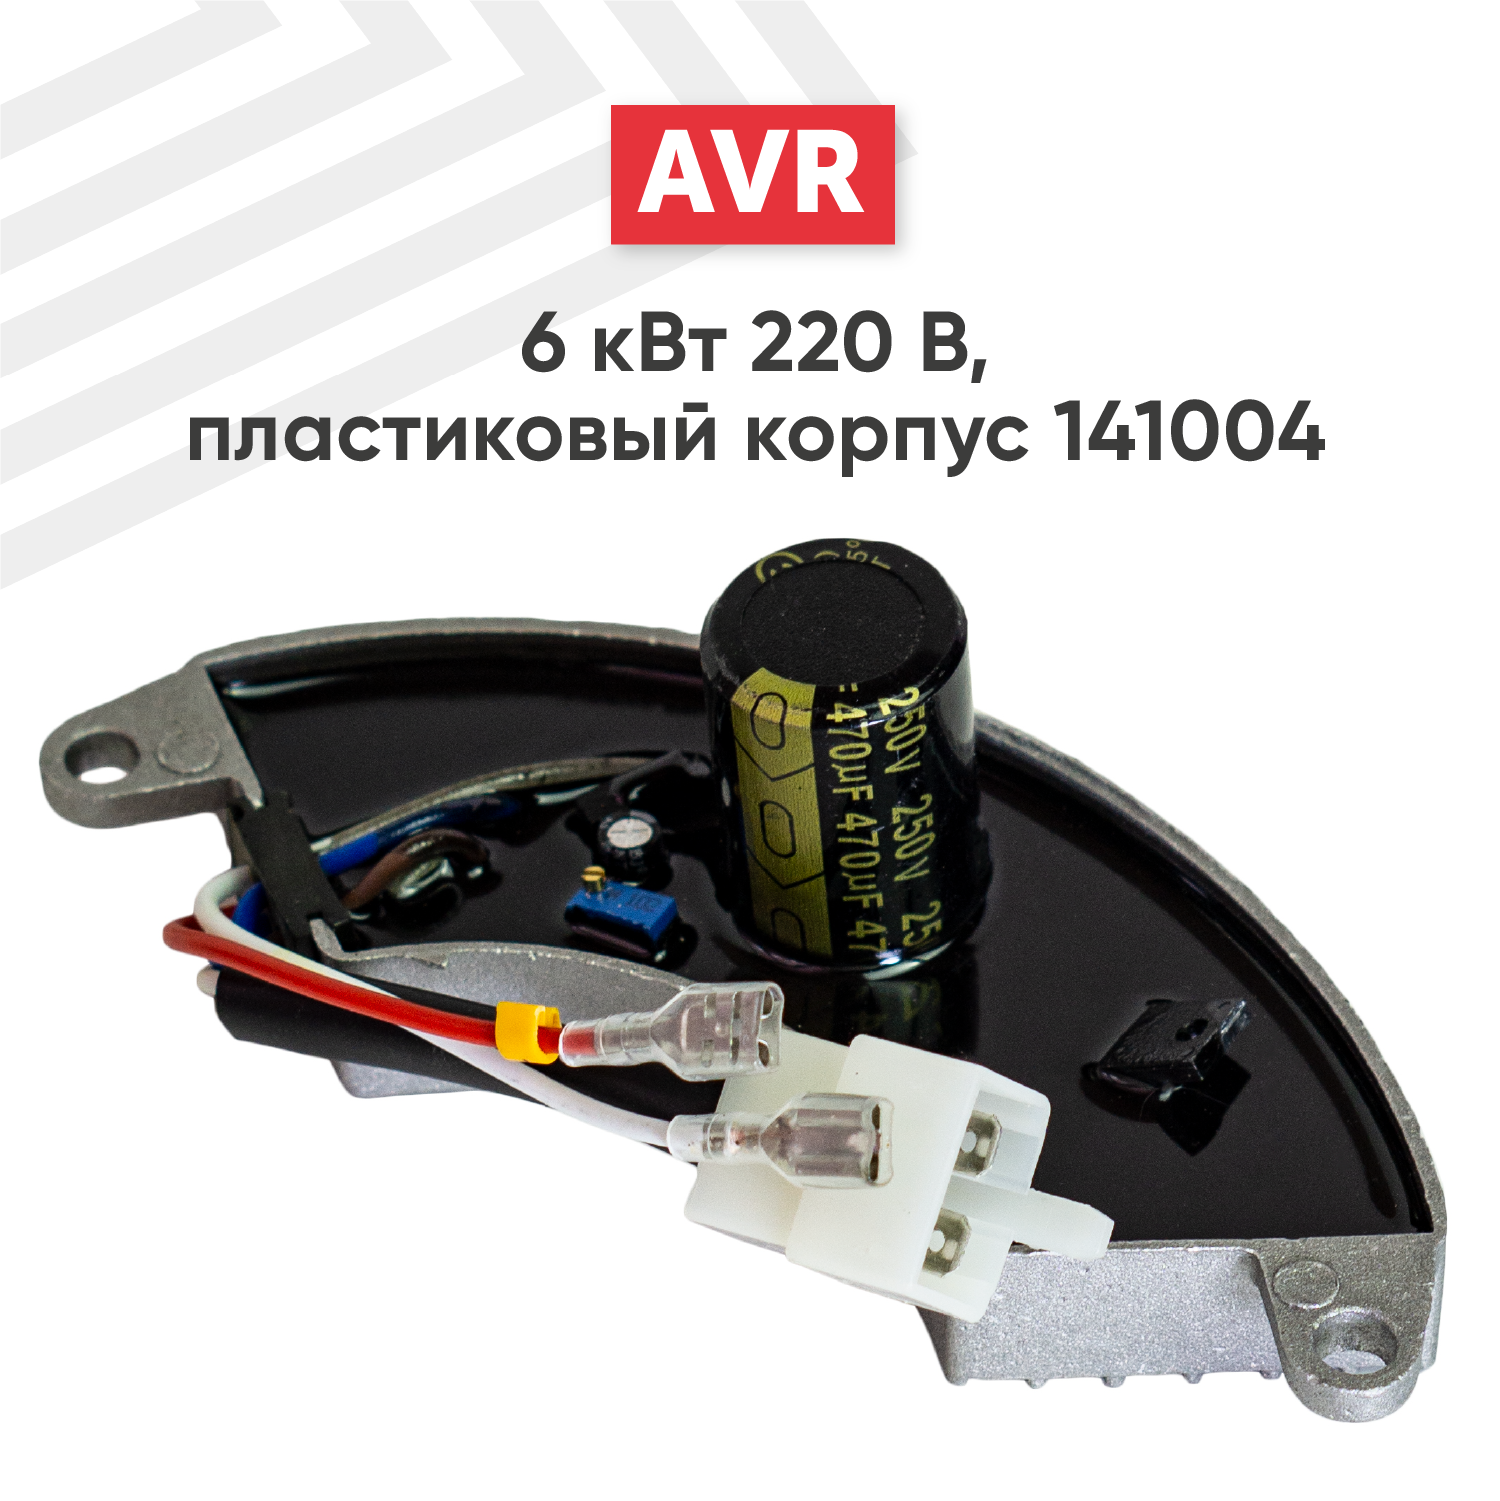 Автоматический регулятор переменного напряжения 220В (блок AVR) для генератора бензоинструмента 6 кВт пластиковый корпус 141004